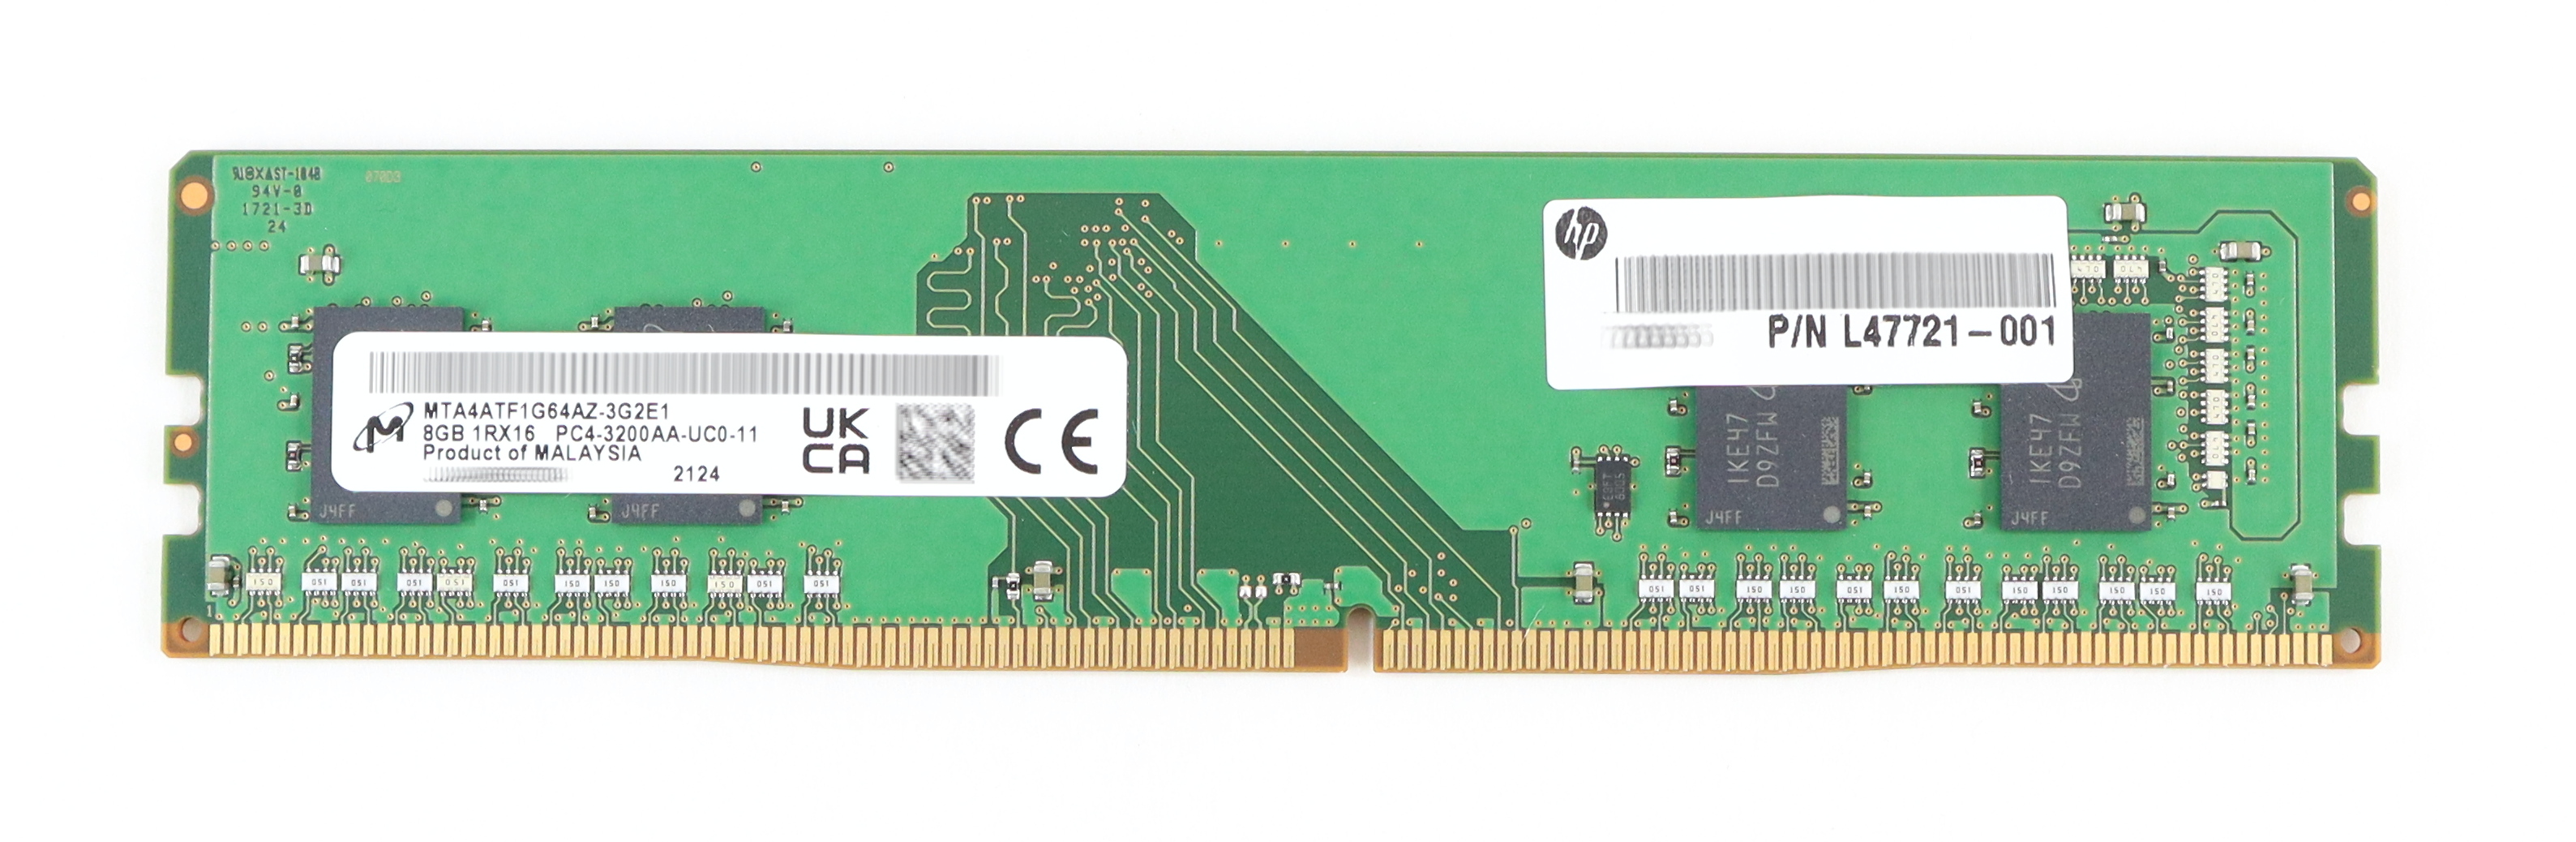 HP Micron 8GB MTA4ATF1G64AZ-3G2E1 PC4-3200AA non-ECC DIMM 13L76AT L47721-001